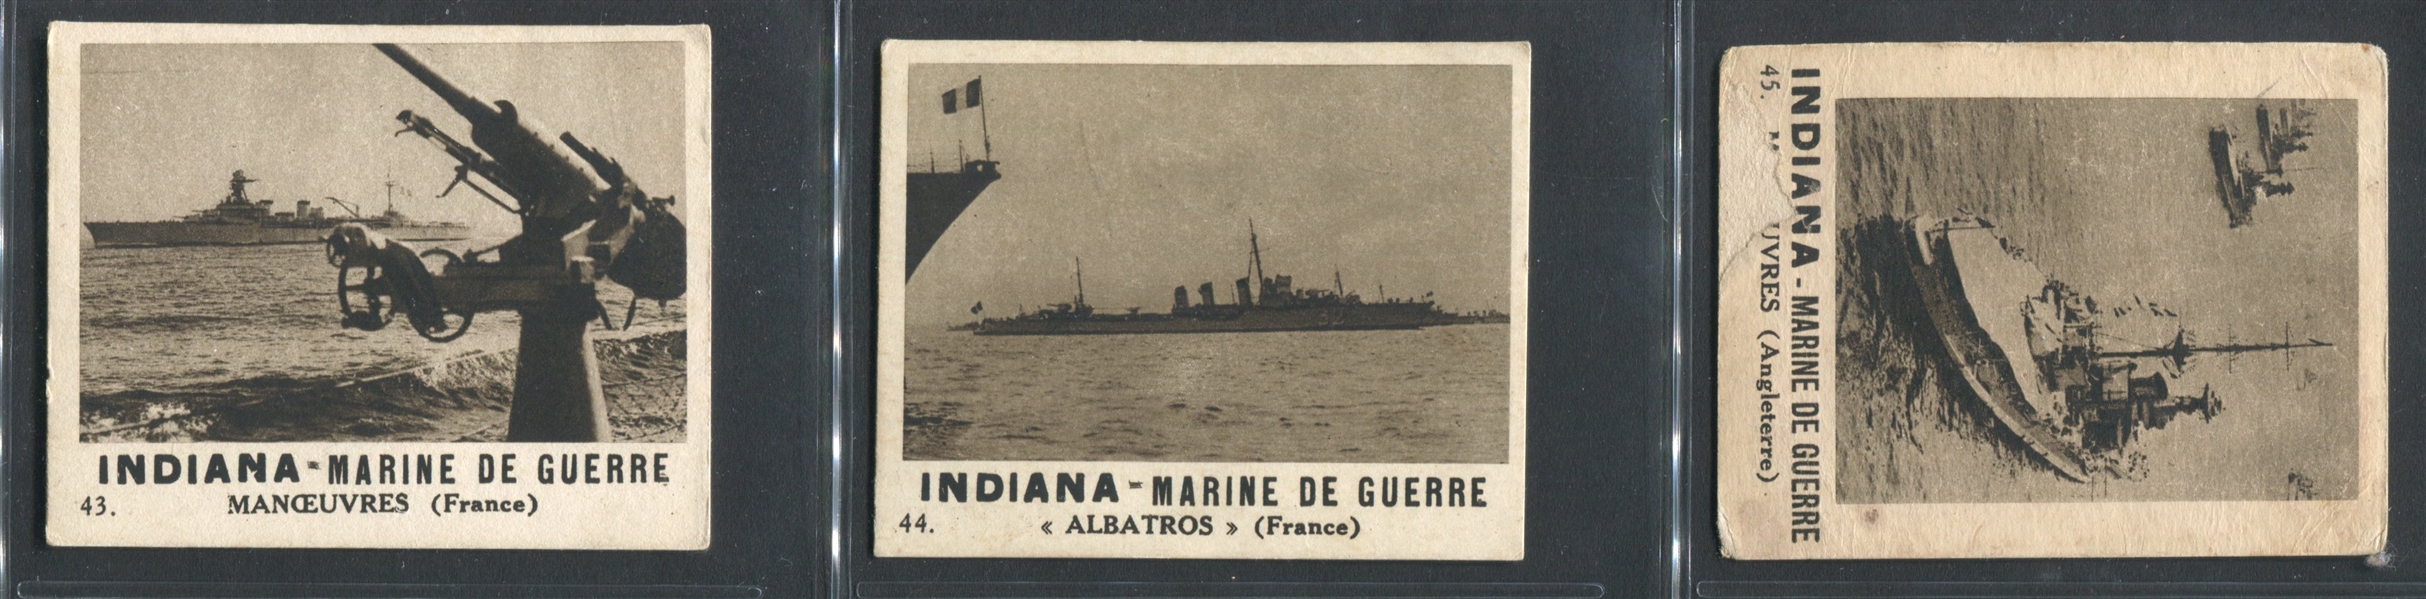 1930's Donat Gum (France) Marine de Guerre Lot of (39) Cards